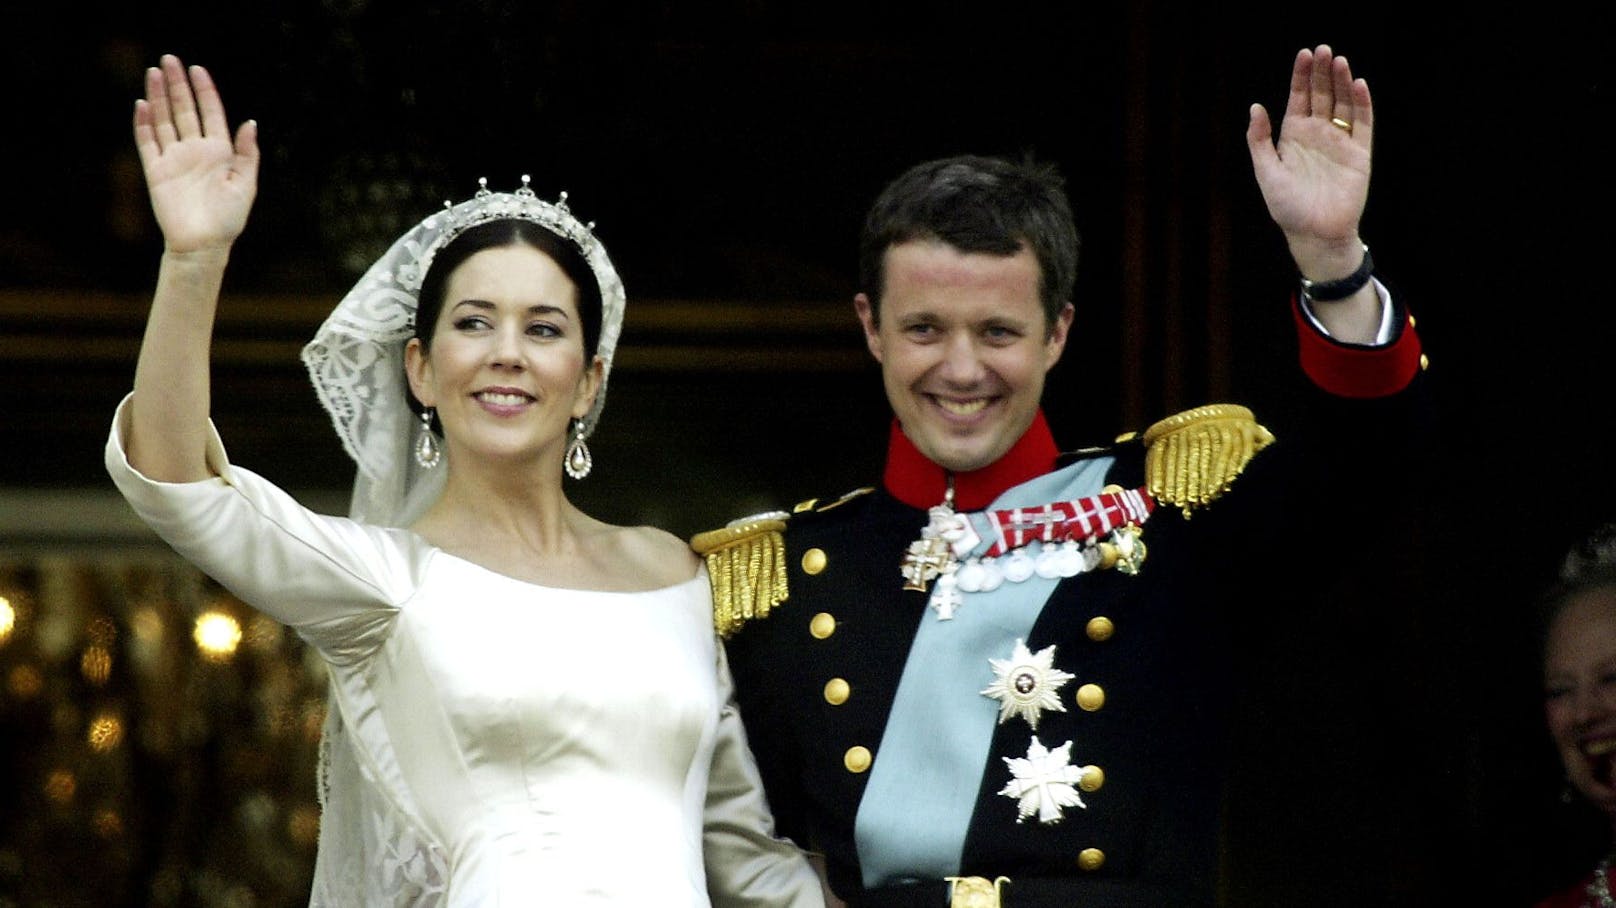 Frederik und Mary bei ihrer Hochzeit 2004. Sie trug ein Kleid vom dänischen Designer Uffe Frank.